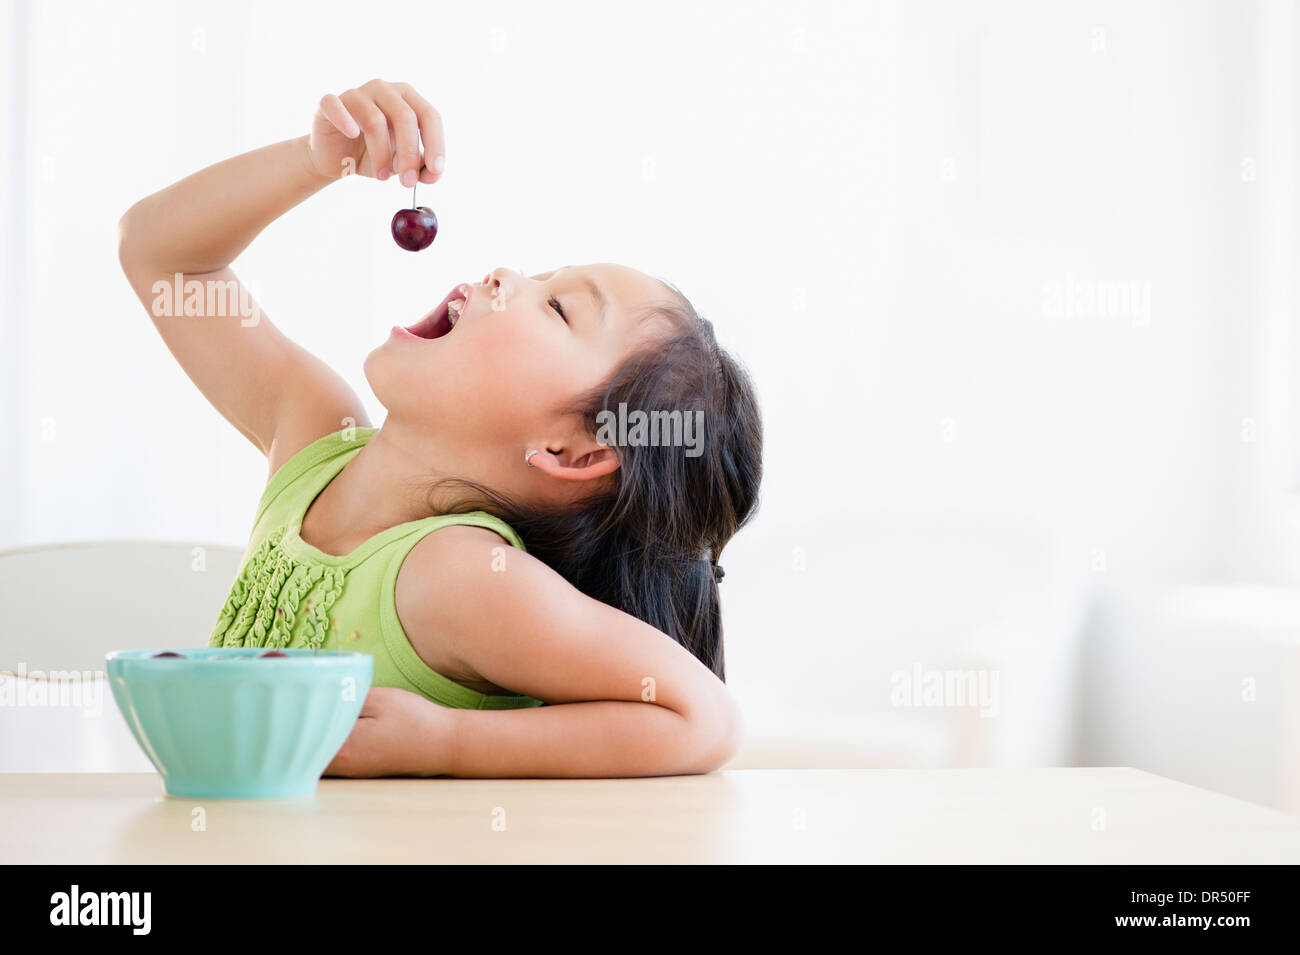 Korean girl eating bowl of fruit Stock Photo